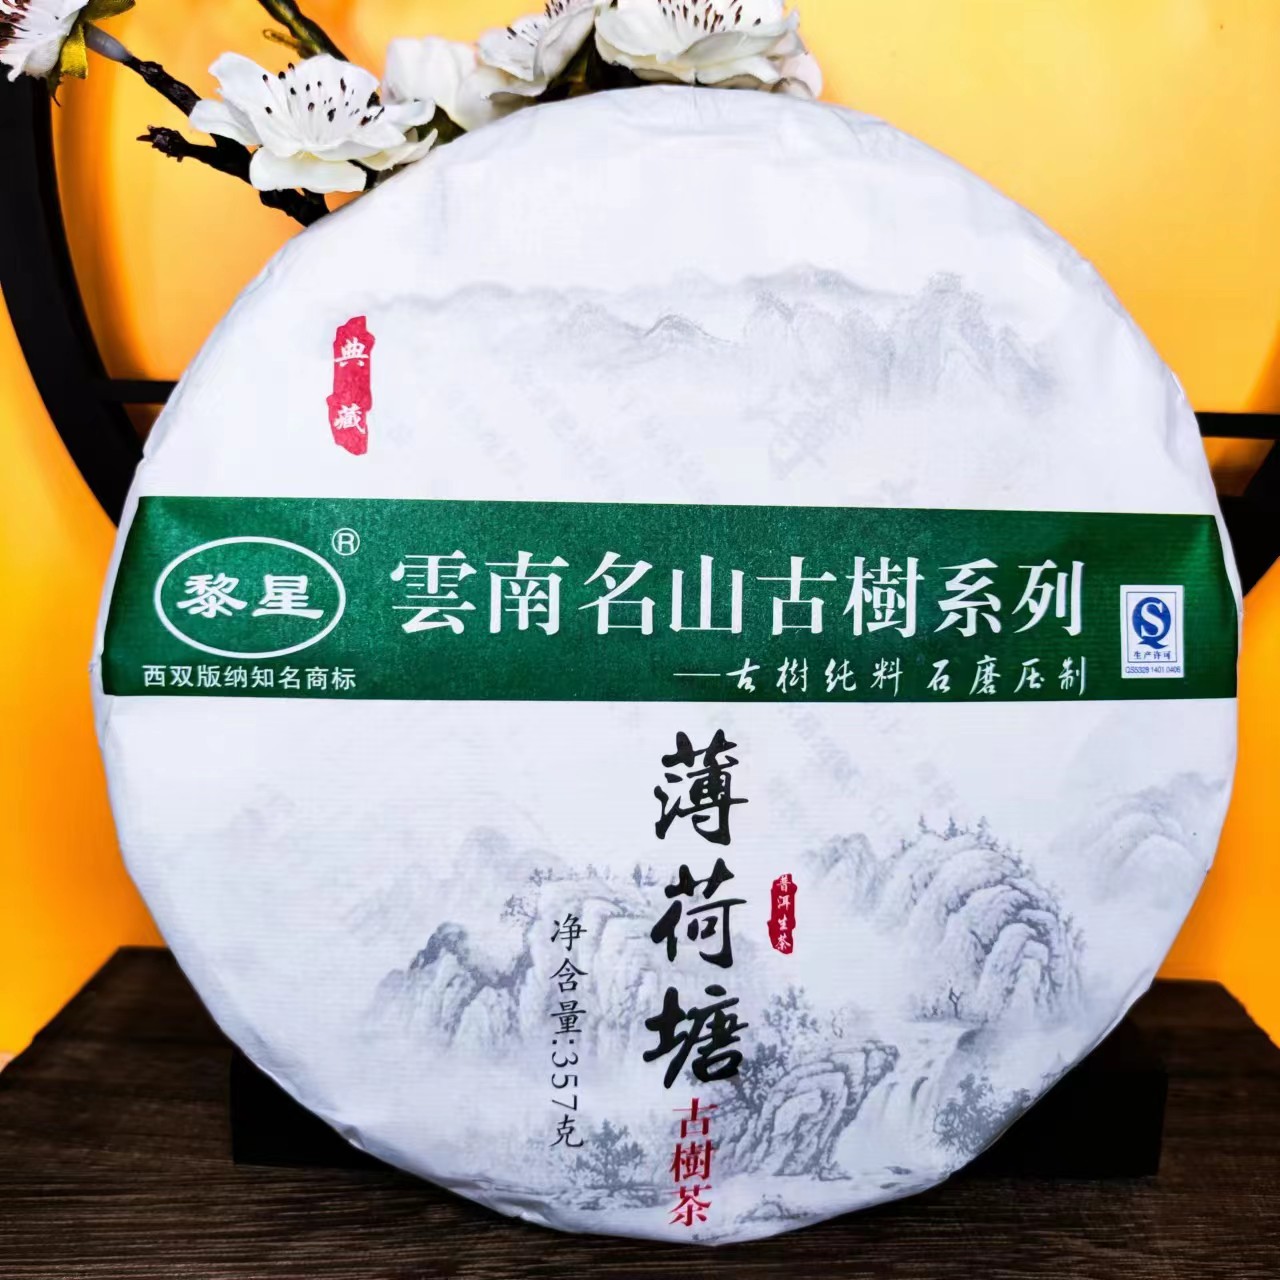 【黎明星火茶厂】2017年 名山古树系列薄荷塘 357克 普洱茶 生茶